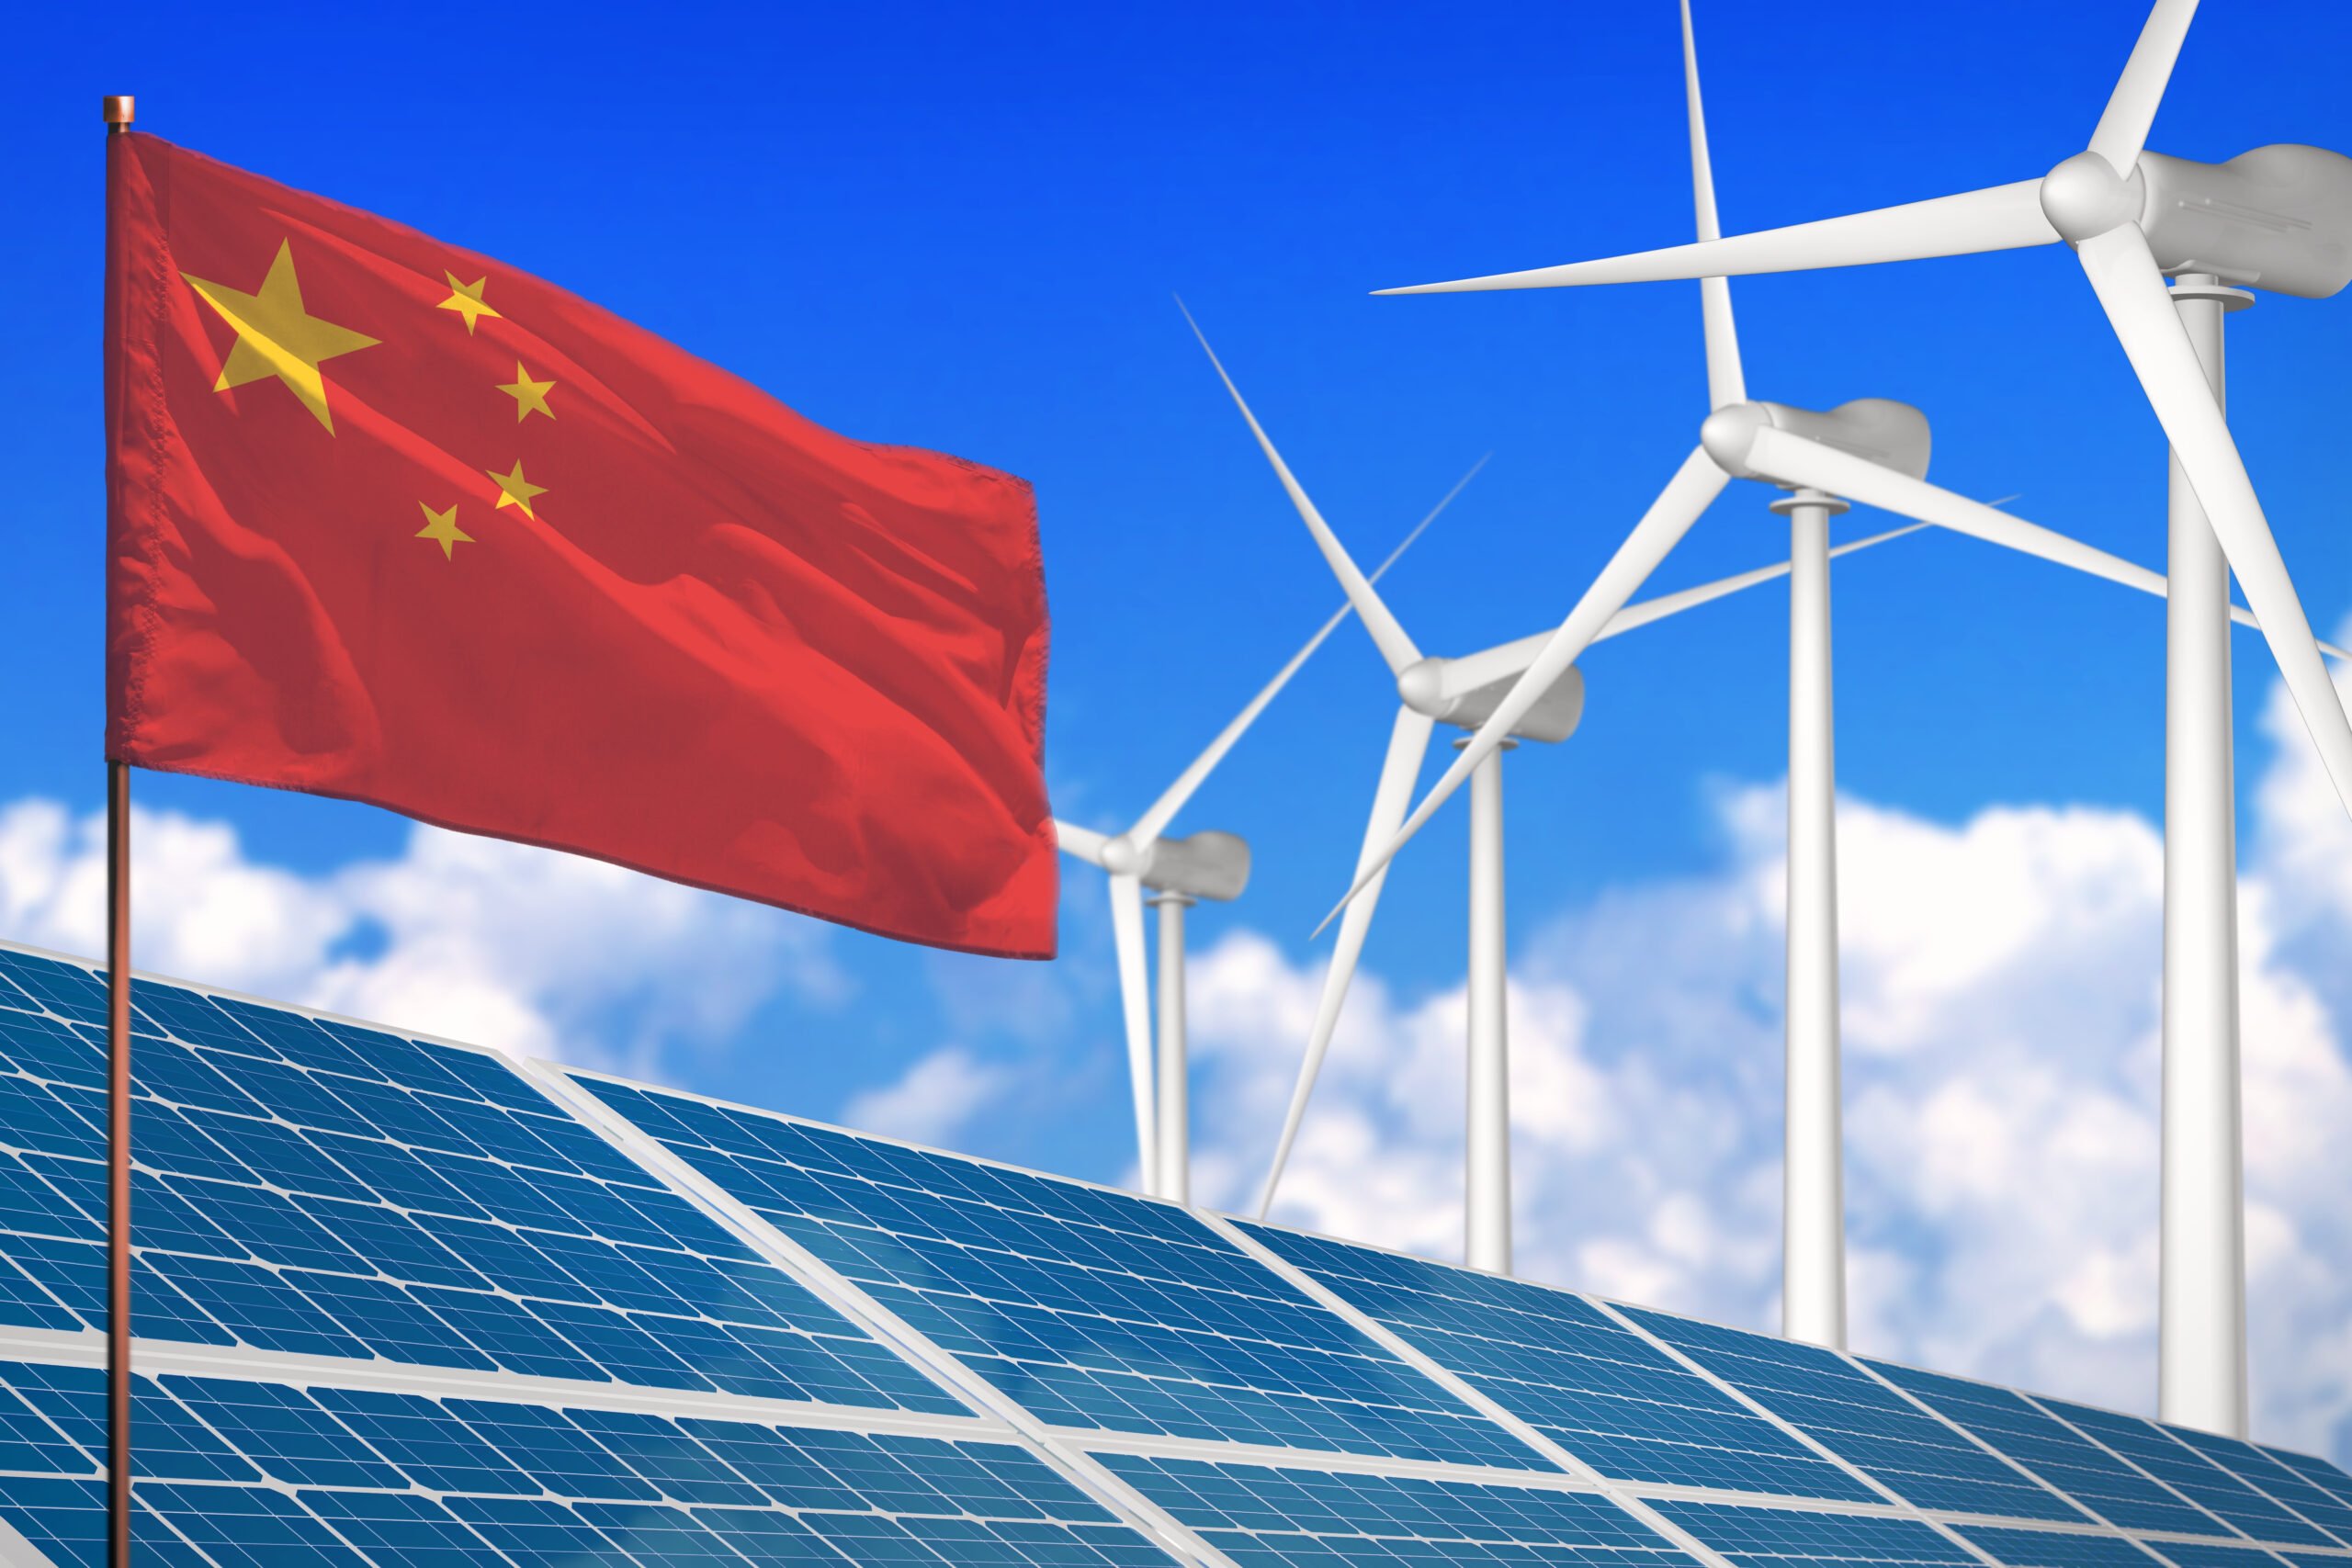 الطاقة الشمسية والرياح في الصين تشهد تطورًا كبيرًا